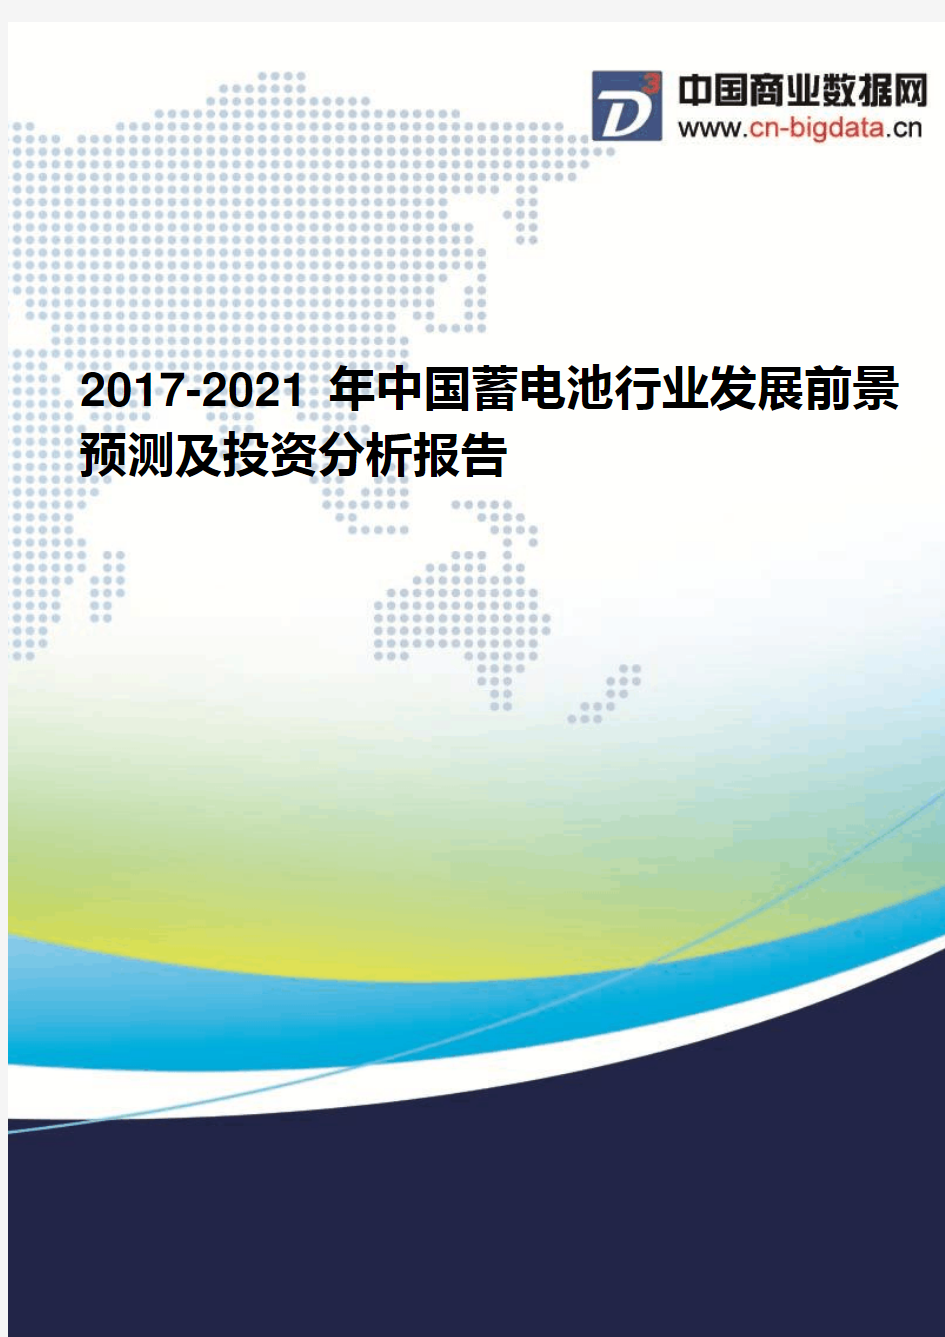 2017-2021年中国蓄电池行业发展前景预测及投资分析报告(2017版目录)